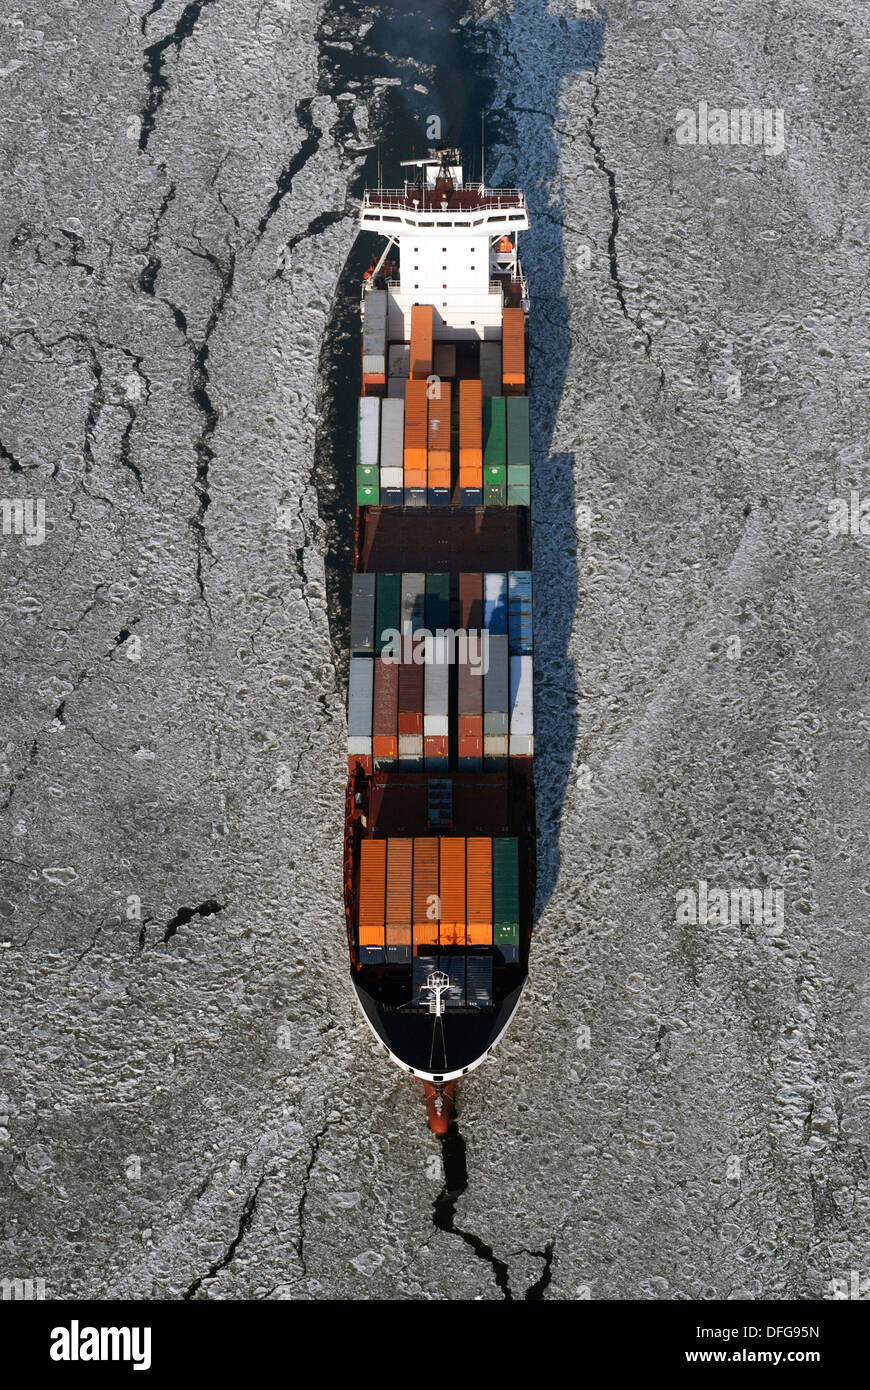 Feederschiff Tetuan umgeben von Eis, Luftaufnahme, Hamburg, Hamburg, Deutschland Stockfoto